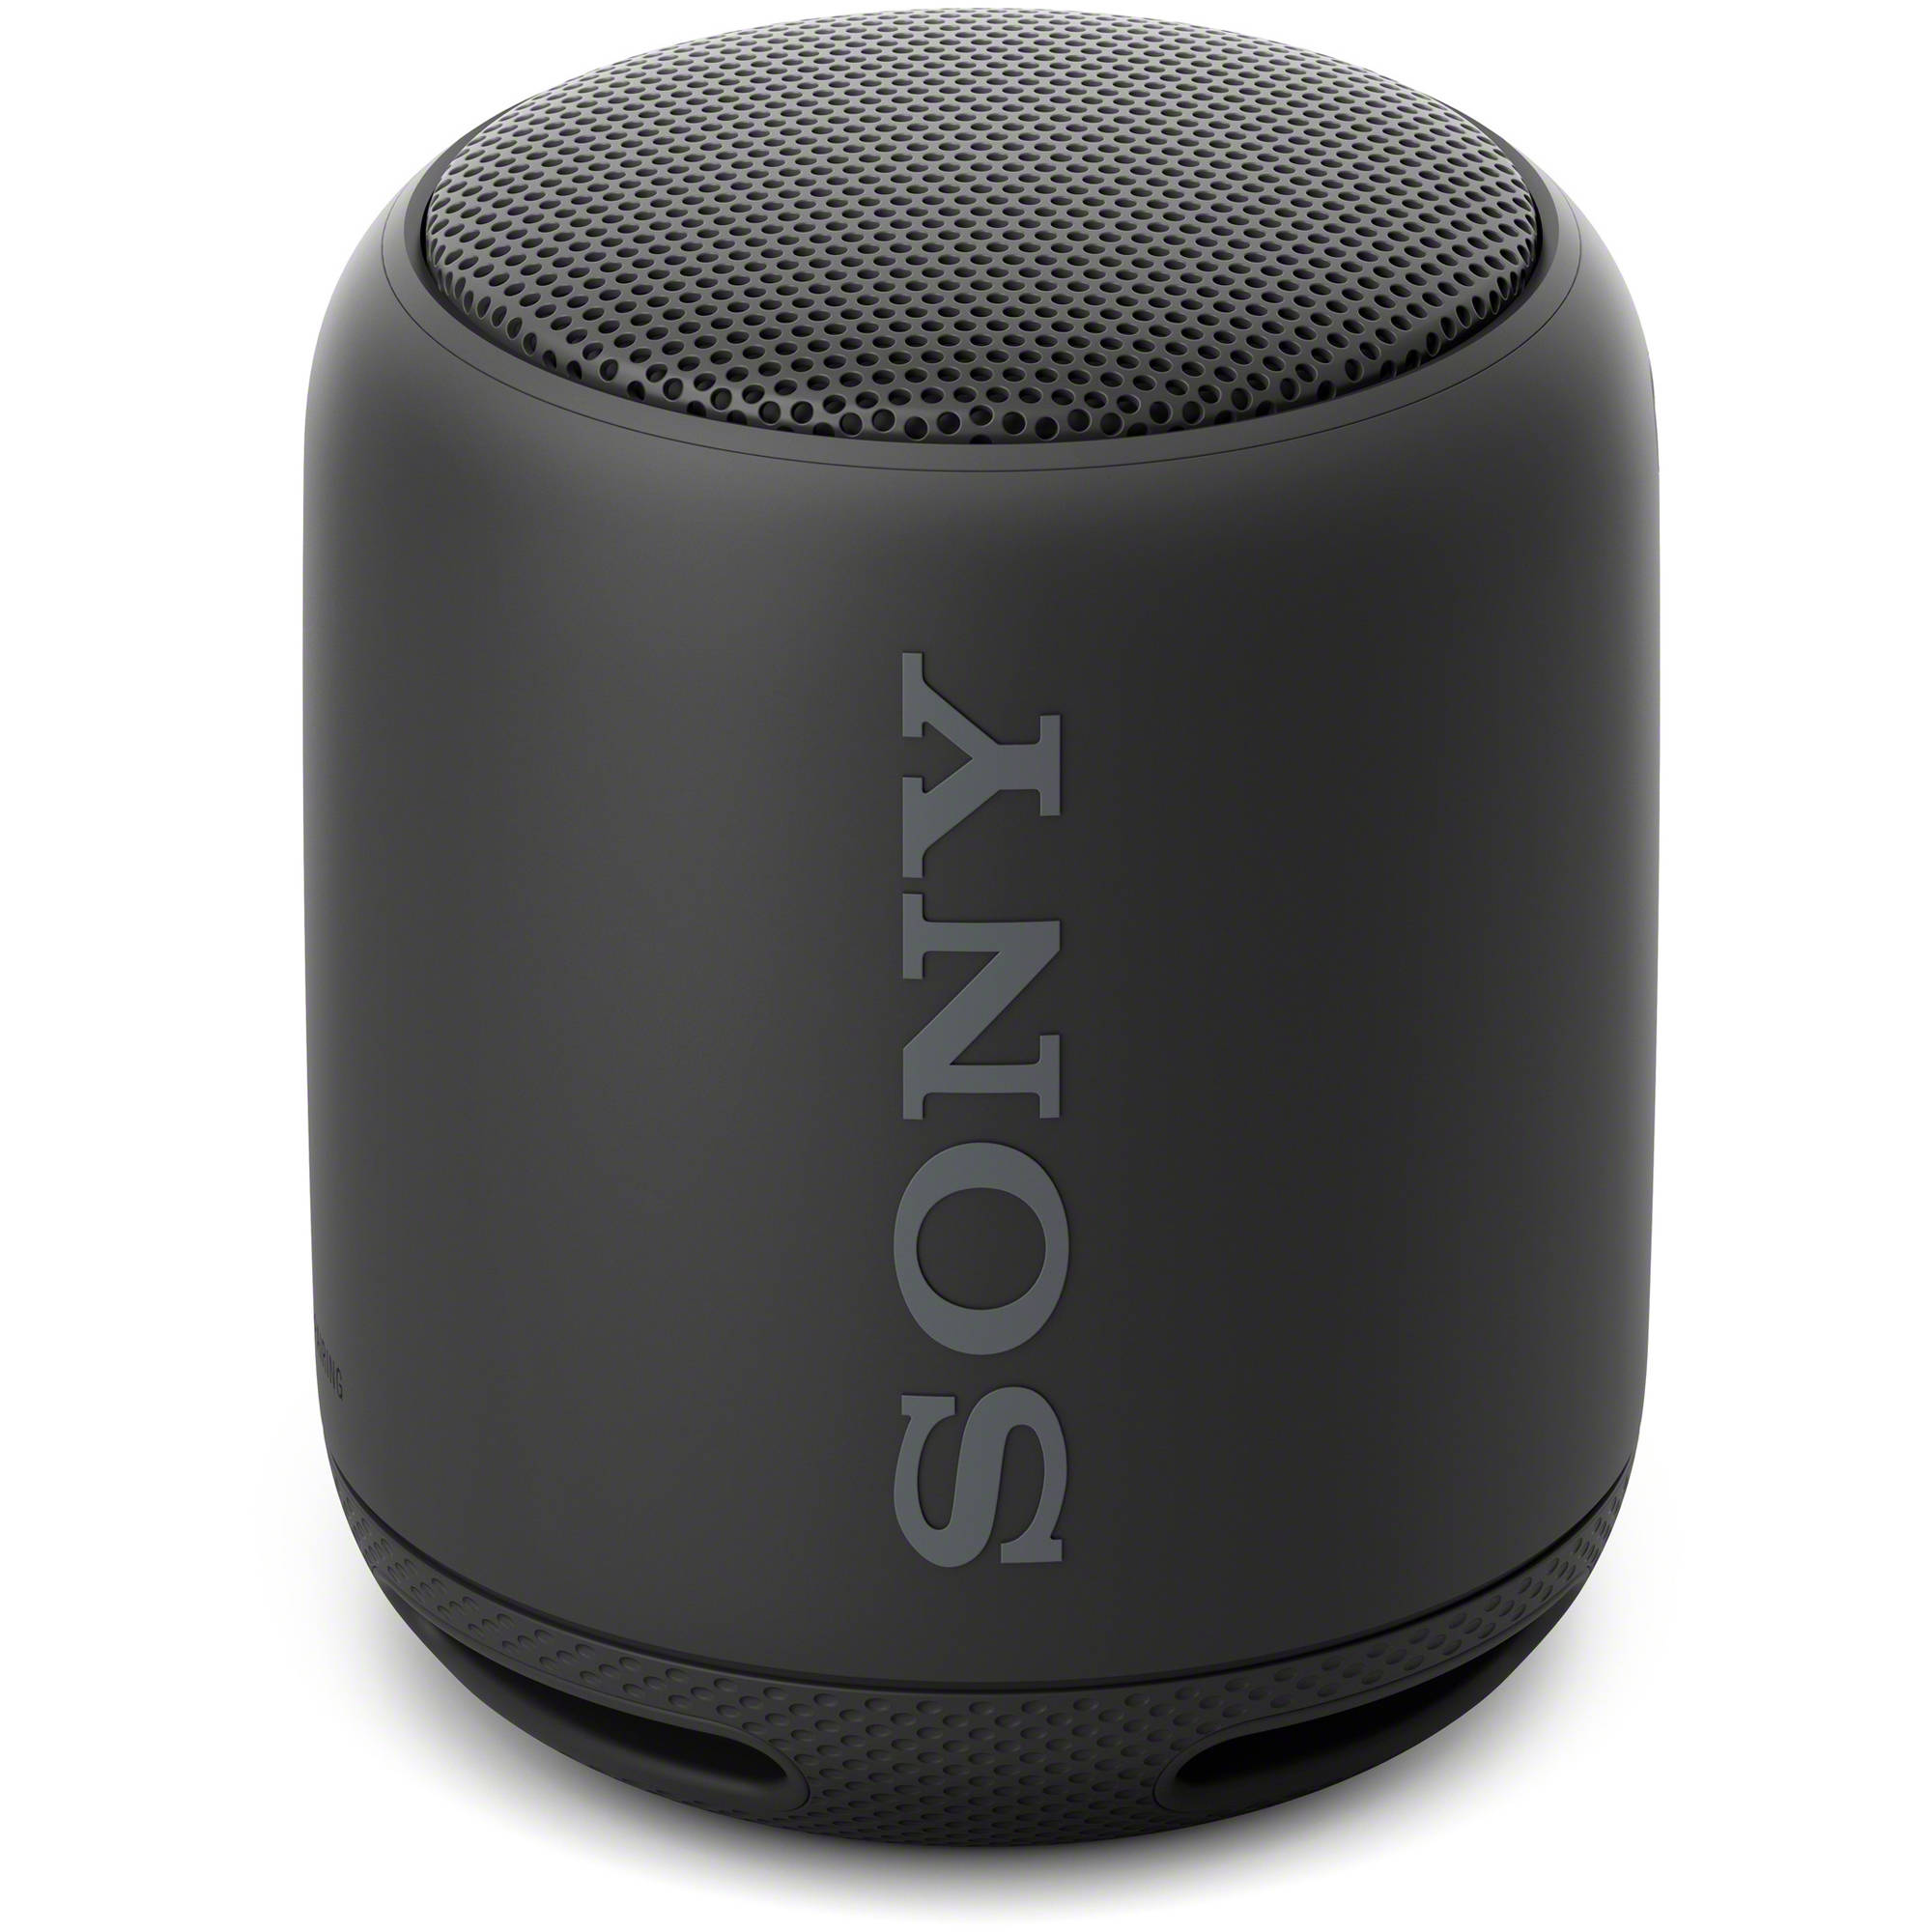 sony speaker srs xb10 price